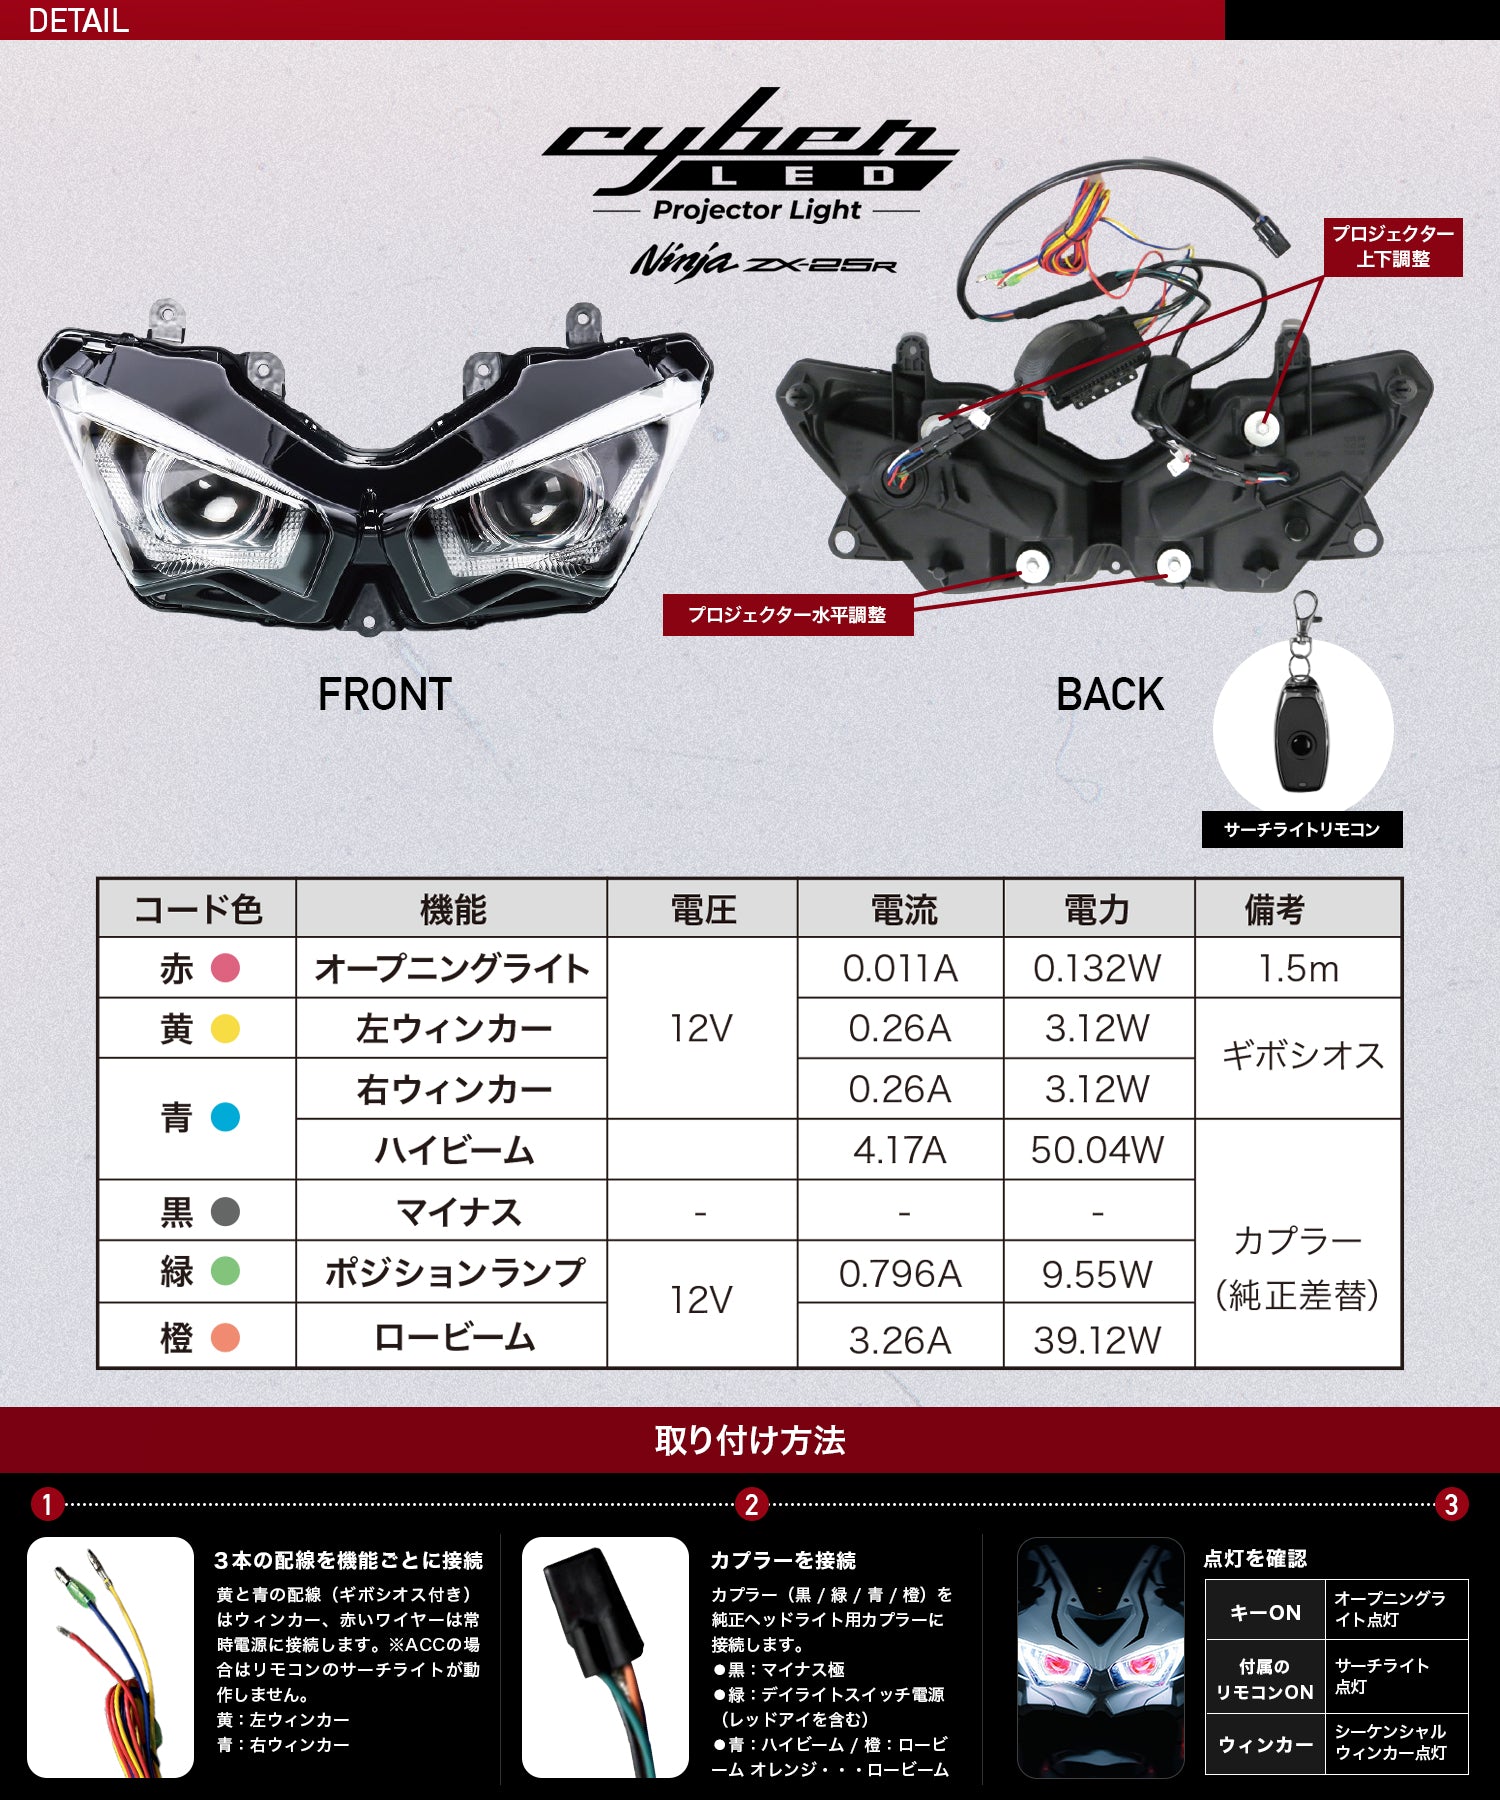 Cyber LED KAWASAKI Ninja ZX-25R カスタムヘッドライト /Ninja250 